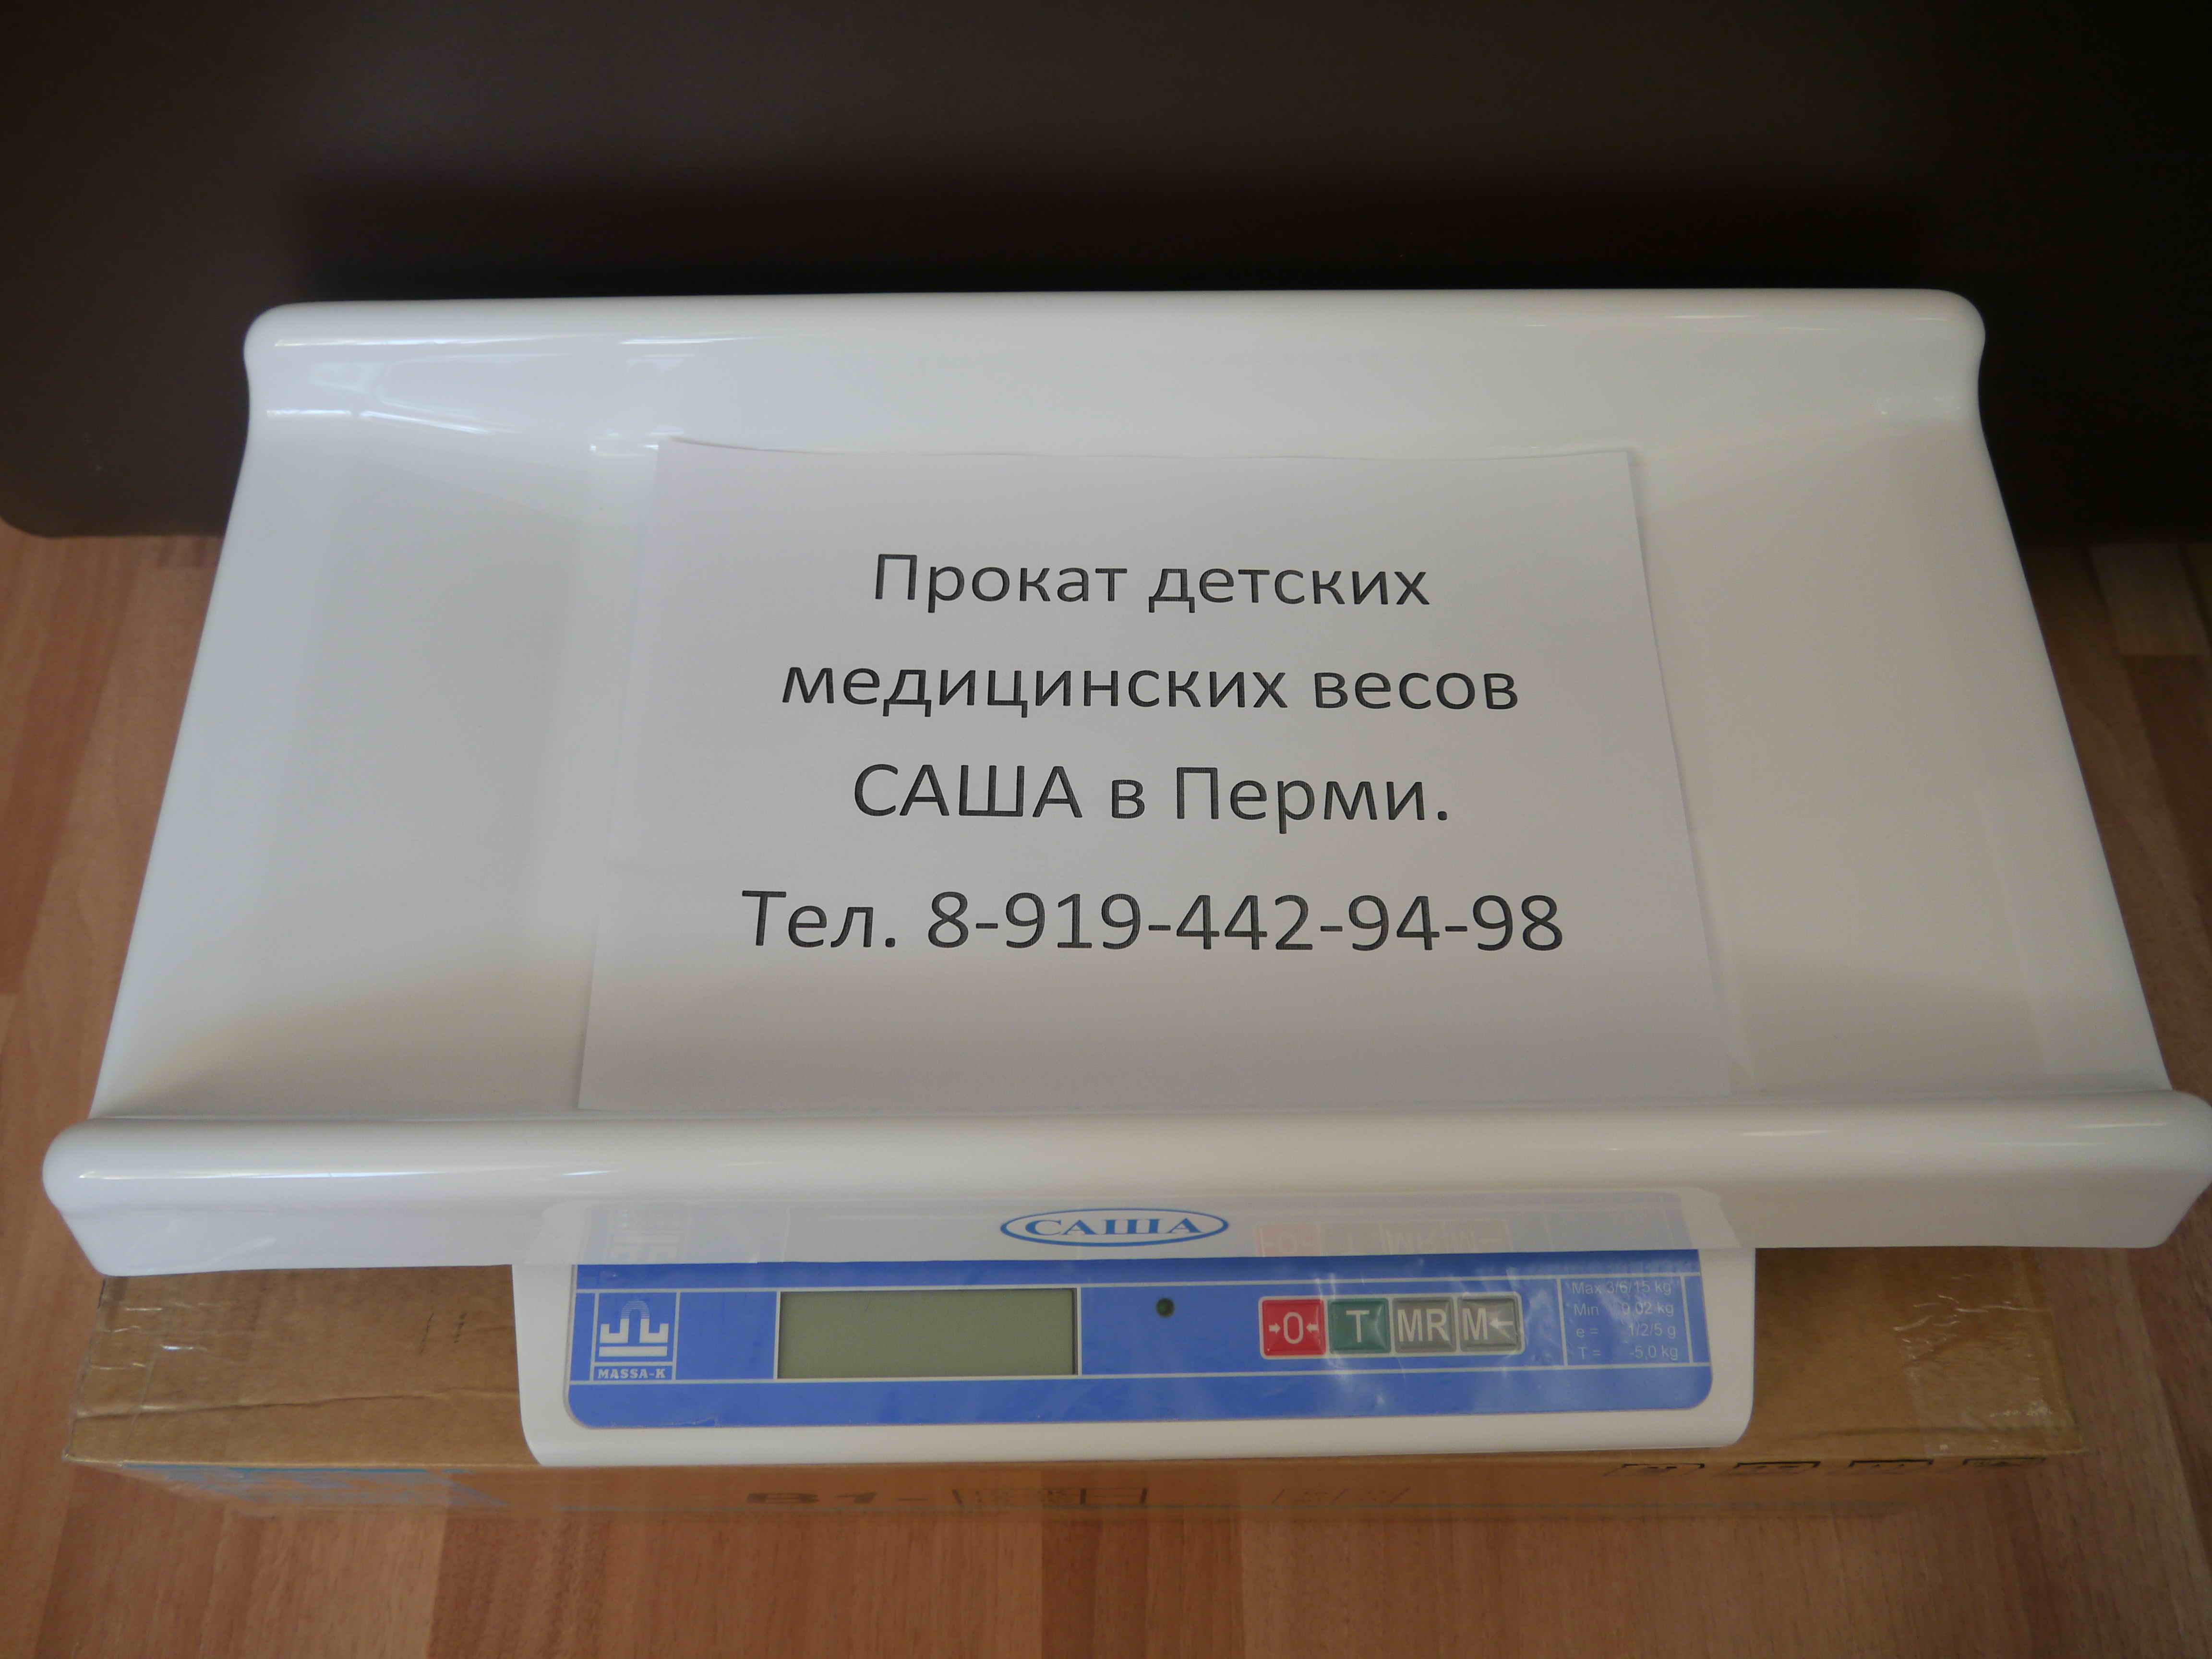 Прокат детских медицинских весов Саша в Перми - фотография